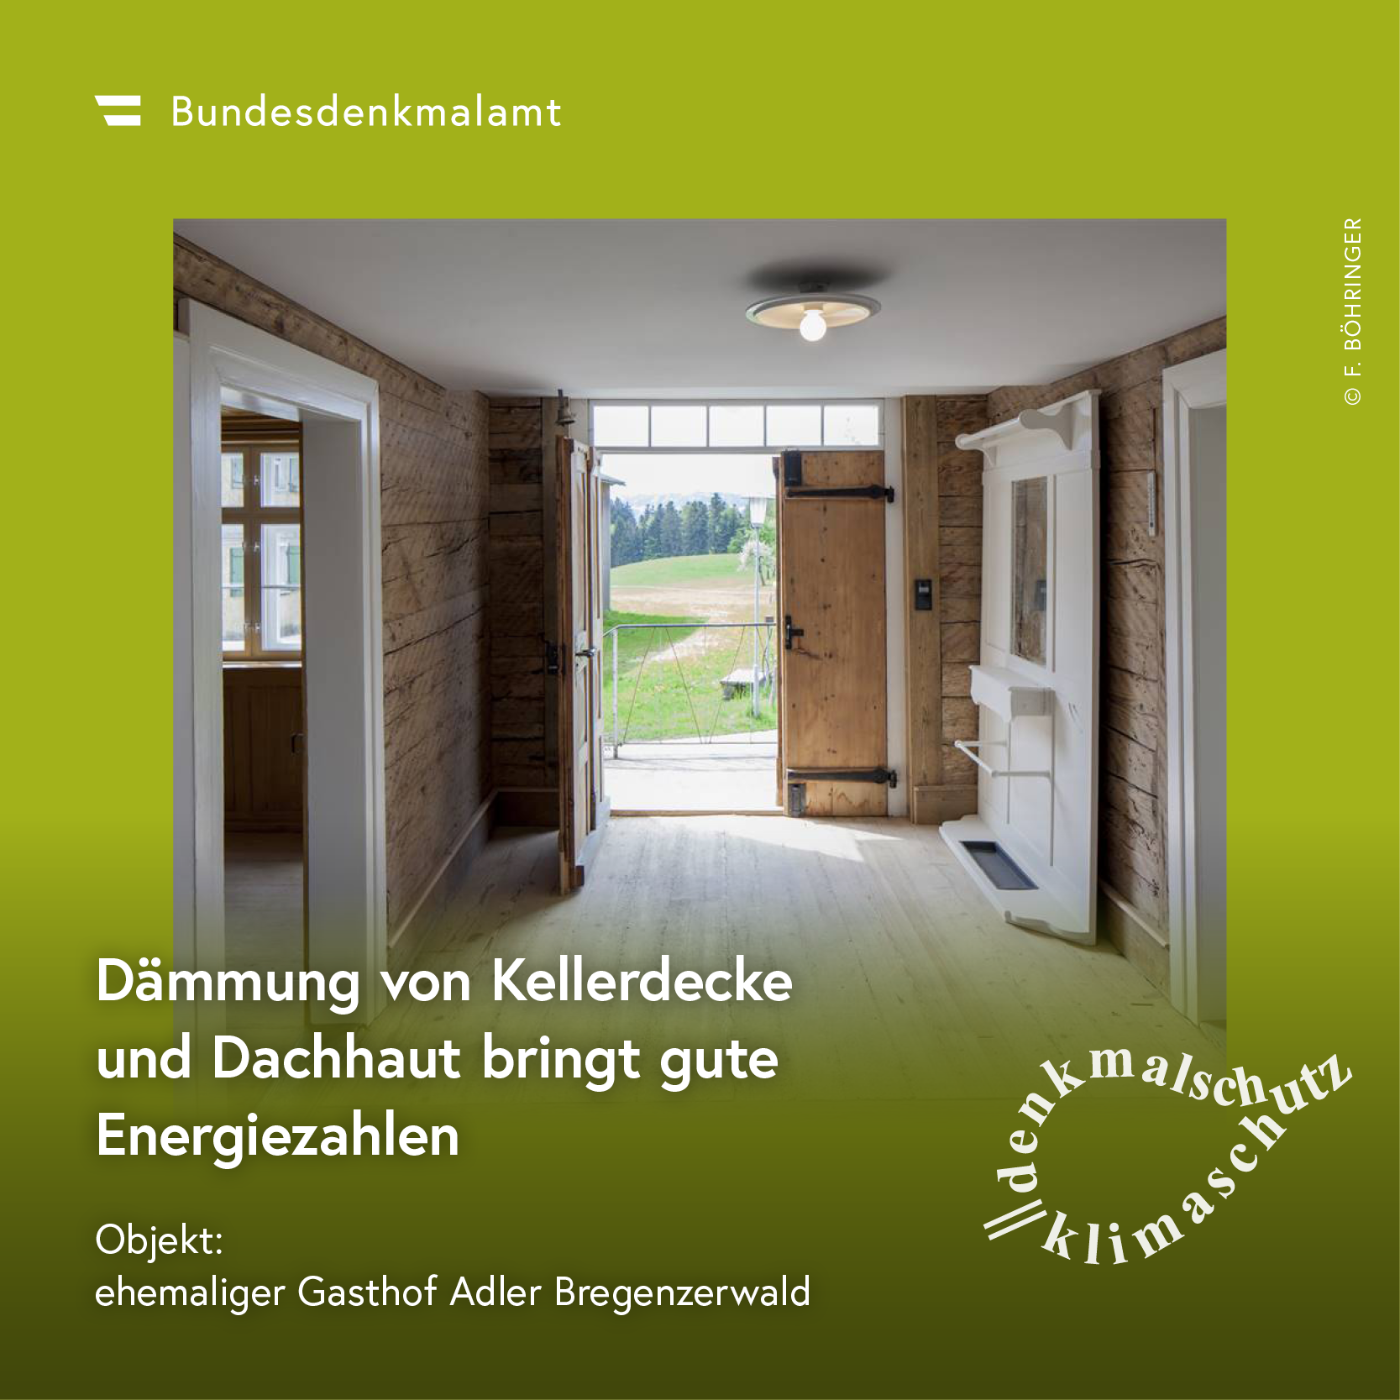 Sujet der Kampagne "Denkmalschutz ist Klimaschutz" - ehemaliger Gasthof Adler im Bregenzerwald (Vorarlberg)